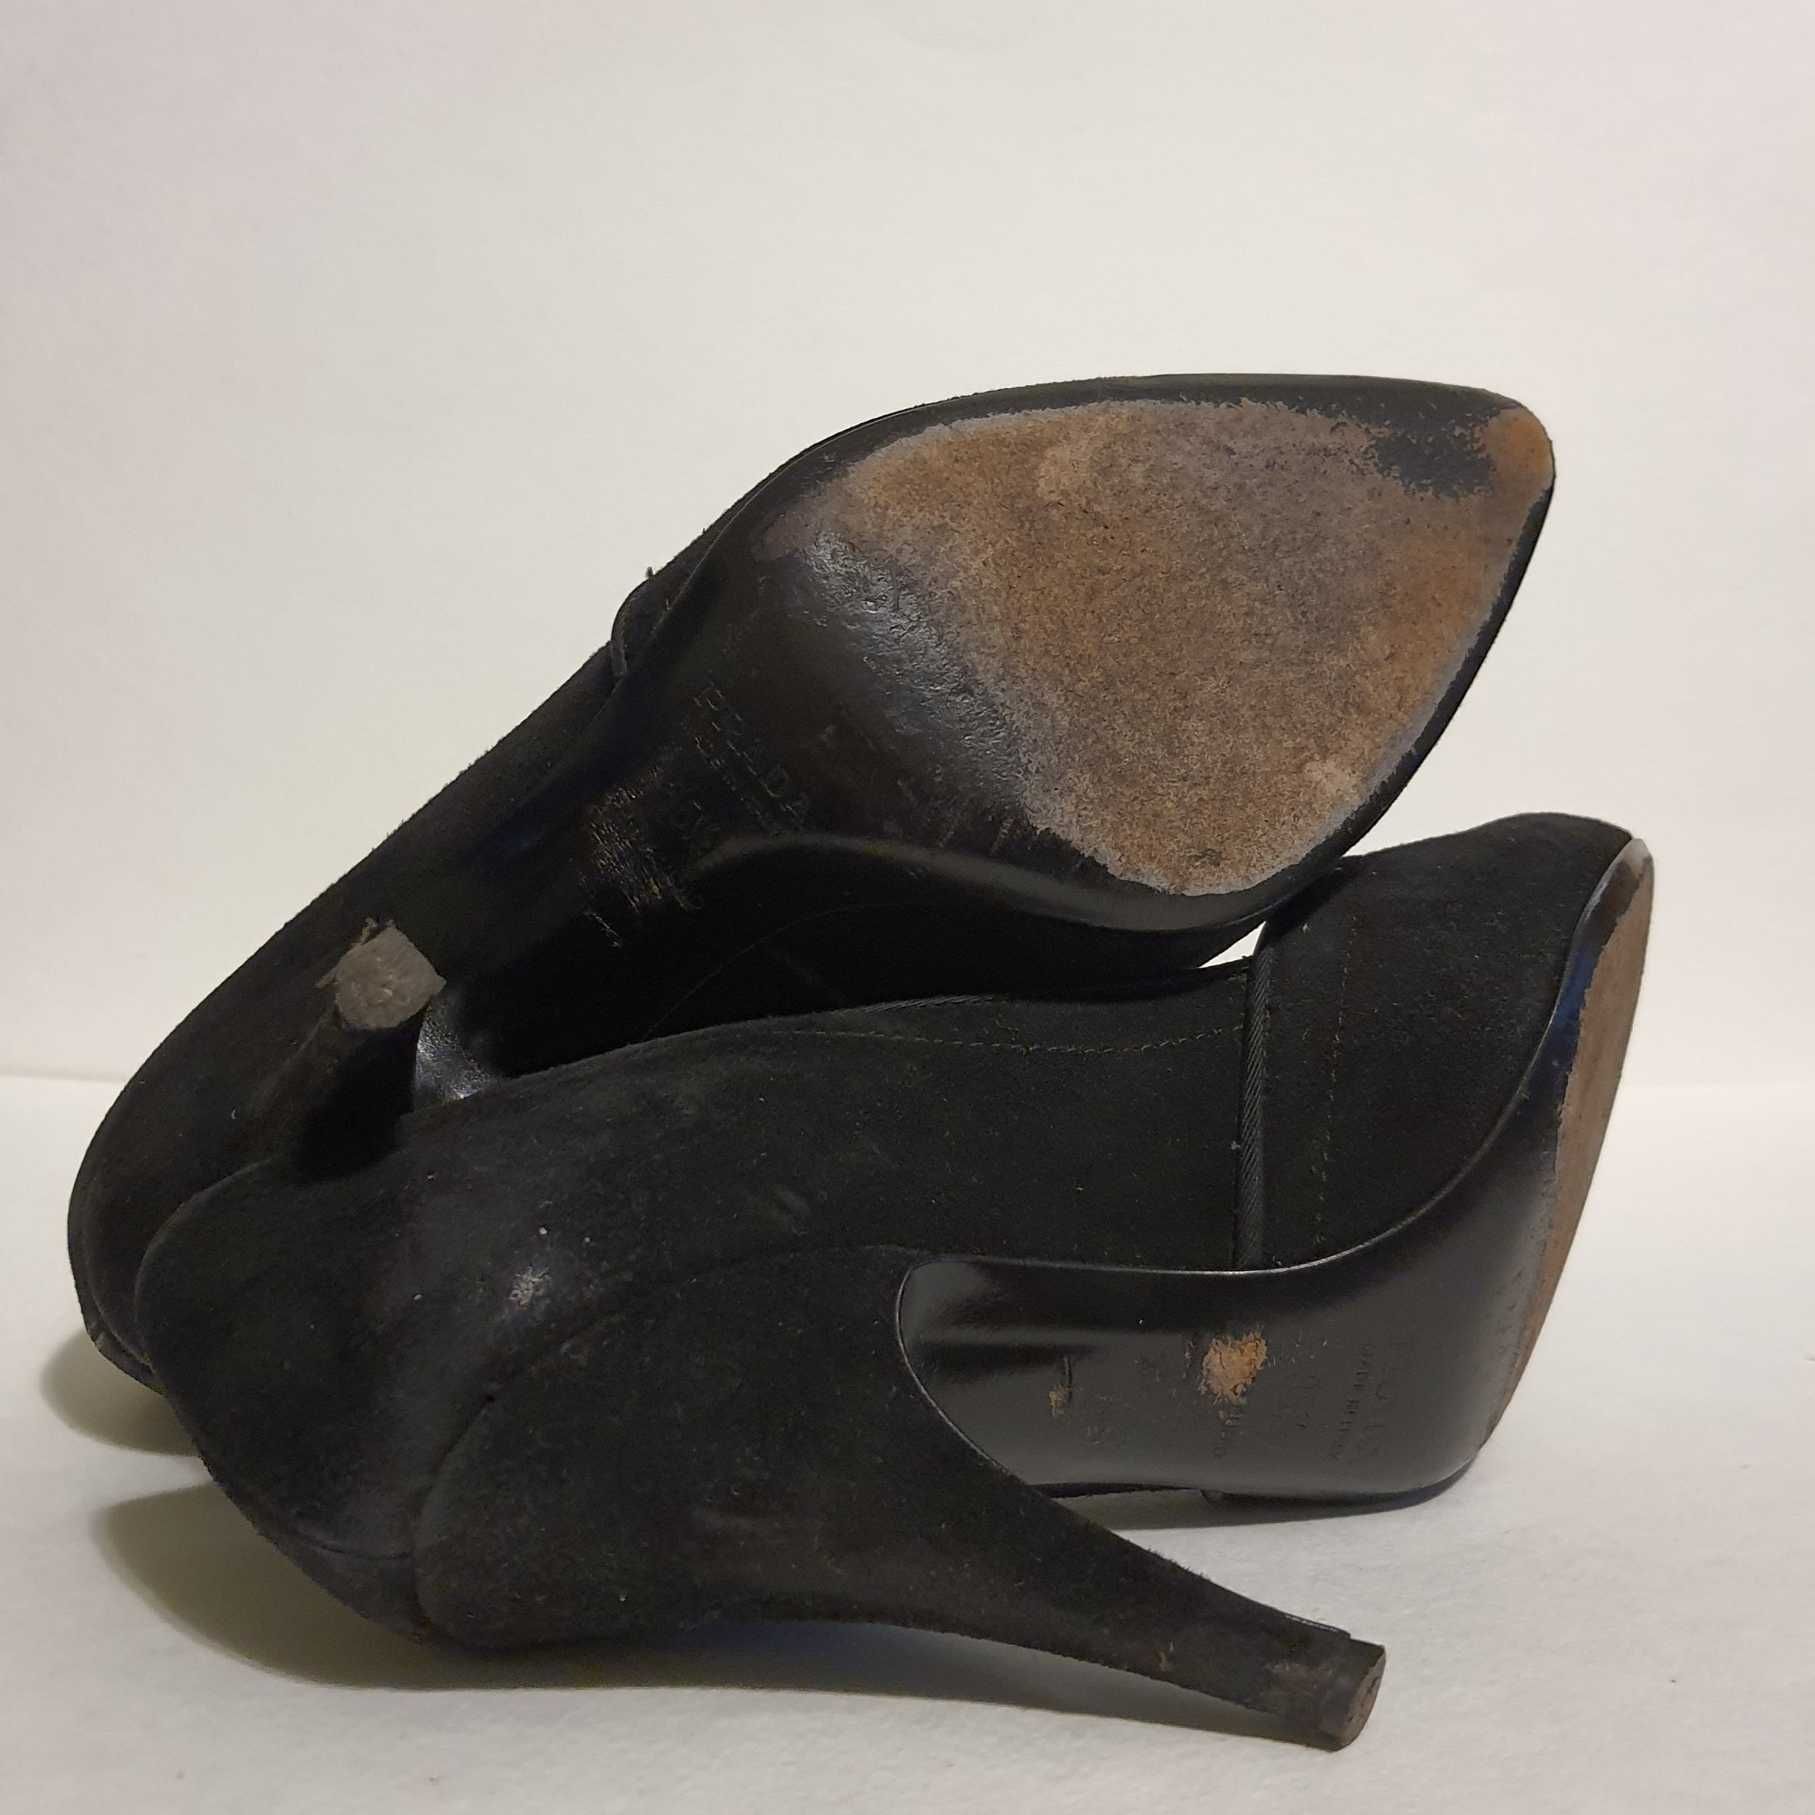 Замшевые черные туфли лодочки на шпильке 35,5EU Prada оригинал